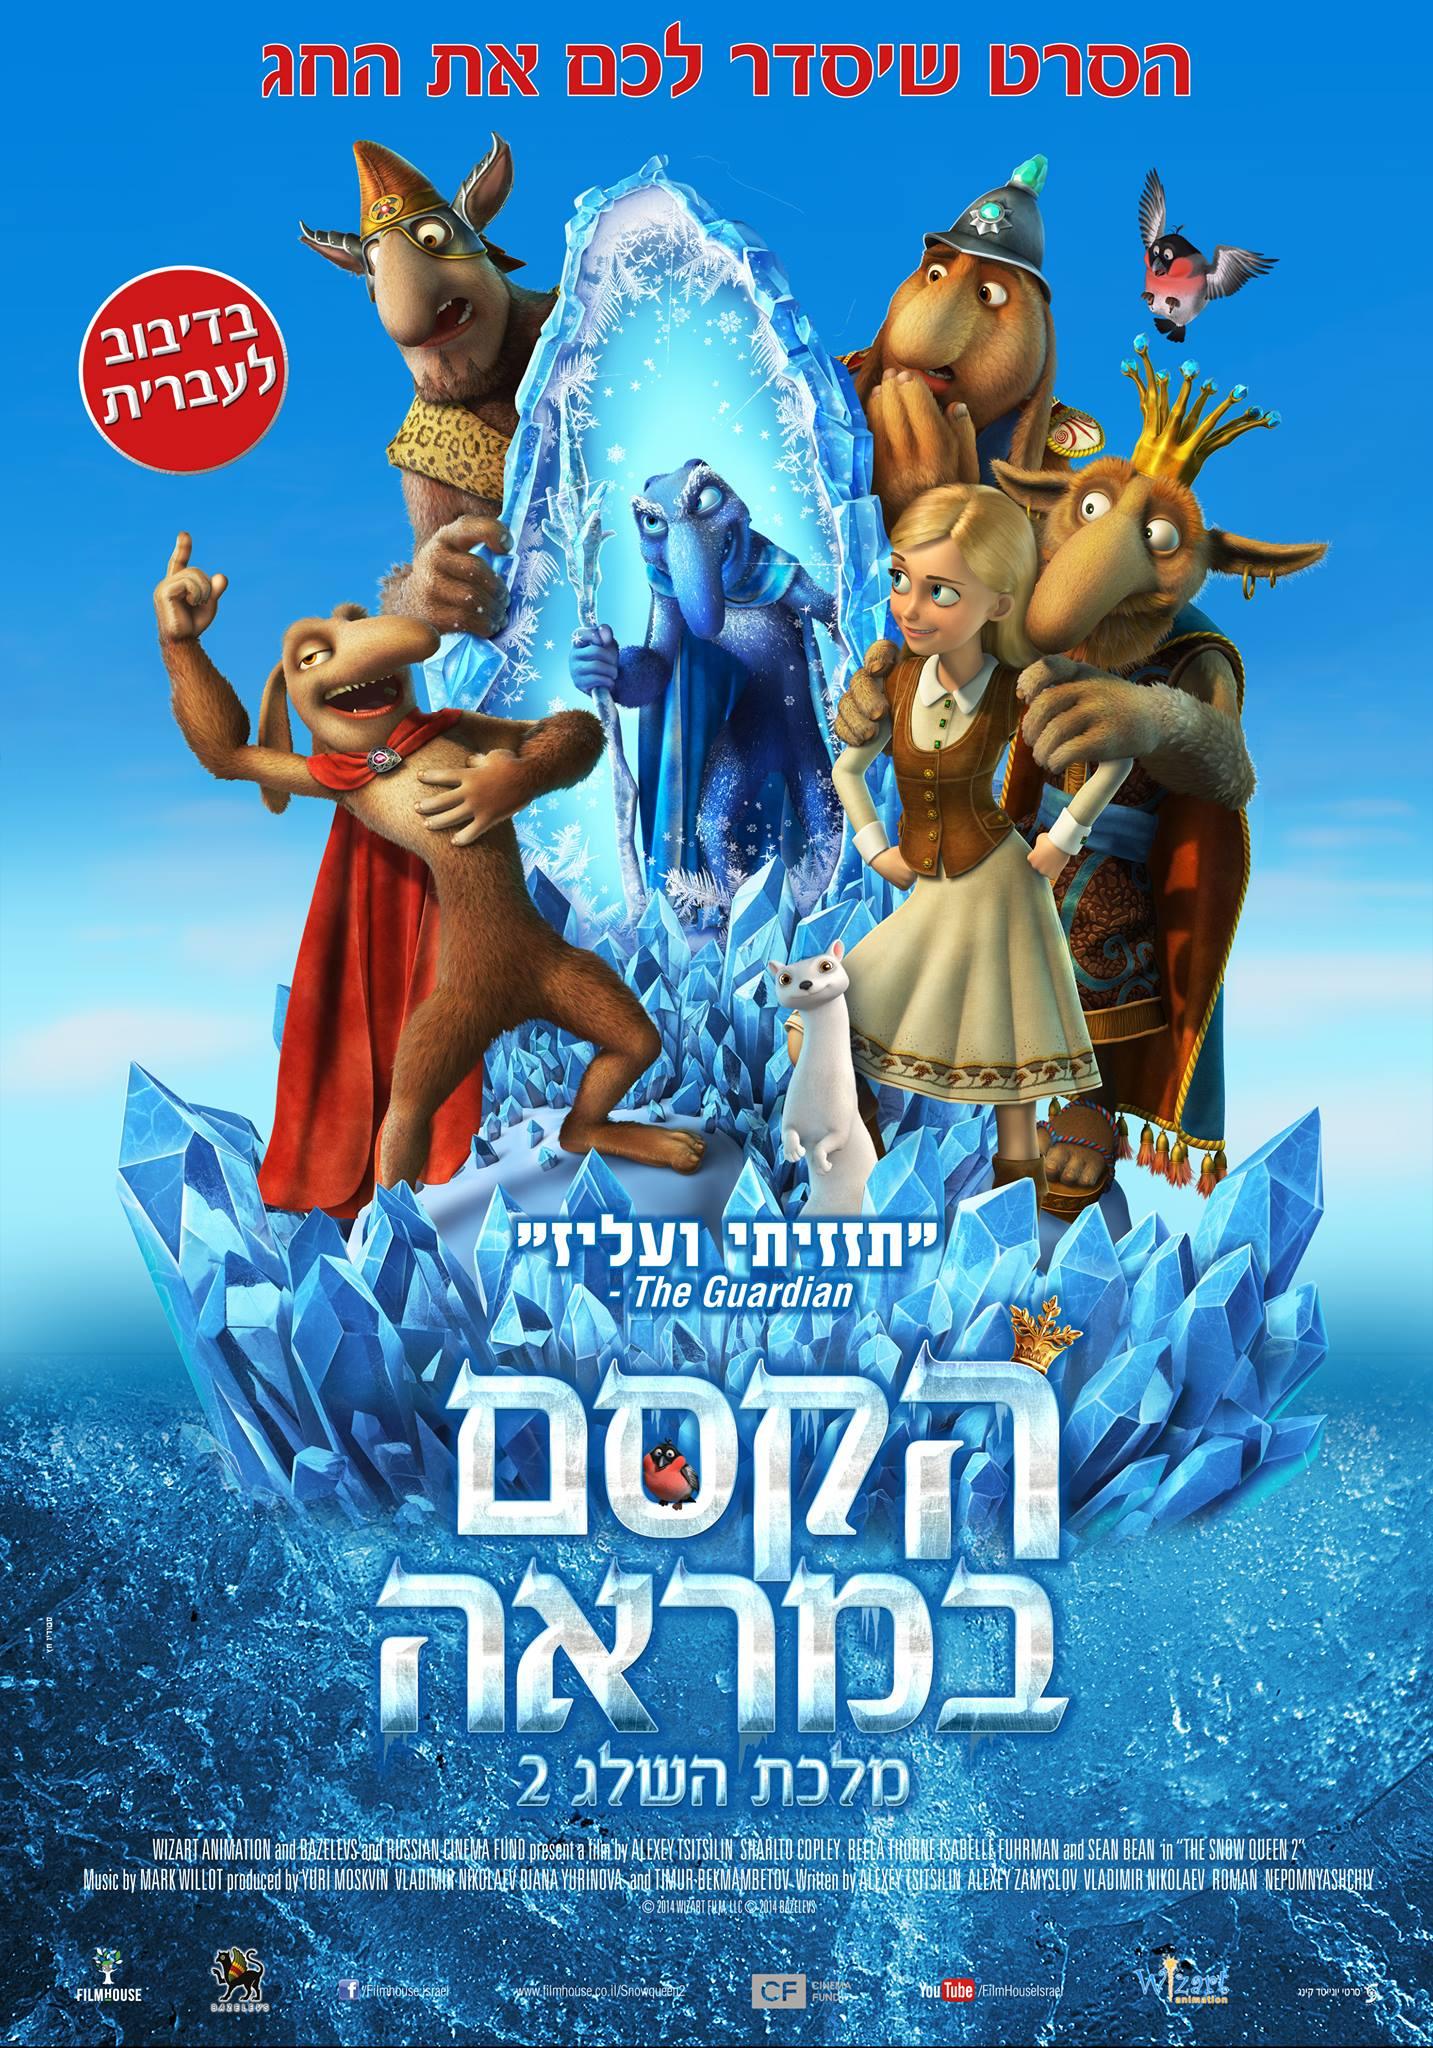 Постер фильма Снежная королева 2: Перезаморозка | Snow Queen 2